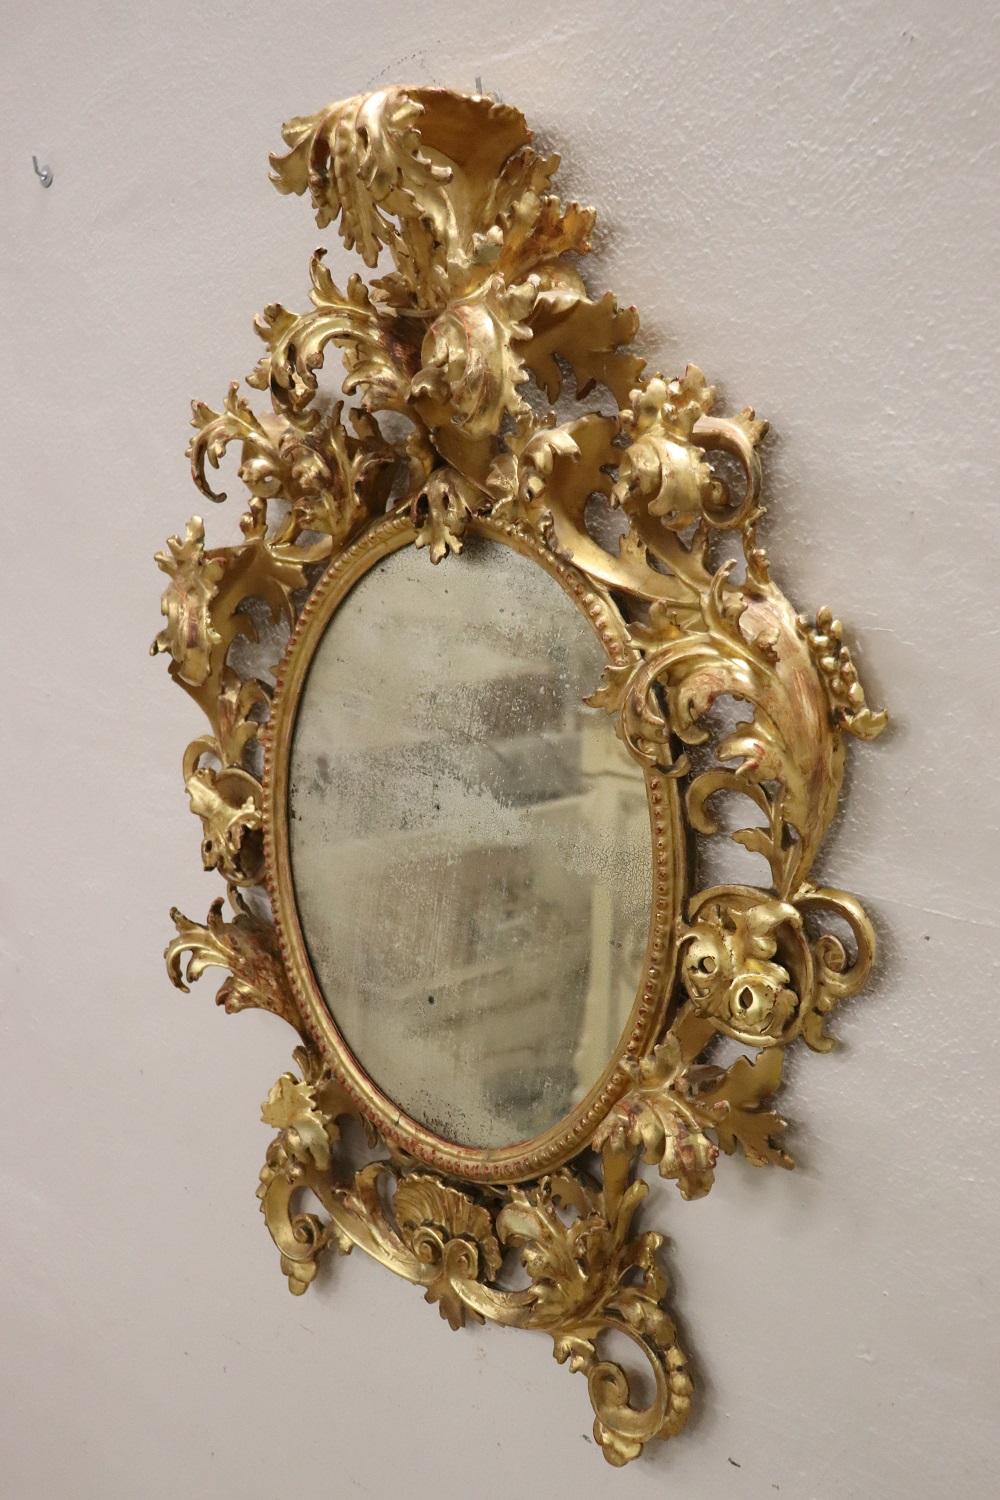 Très important beau et élégant miroir mural ovale de la période baroque, 1750. Entièrement réalisé en bois sculpté et doré à la feuille d'or. La riche décoration sculptée avec des volutes et des feuilles d'acanthe qui s'enroulent sur le devant est